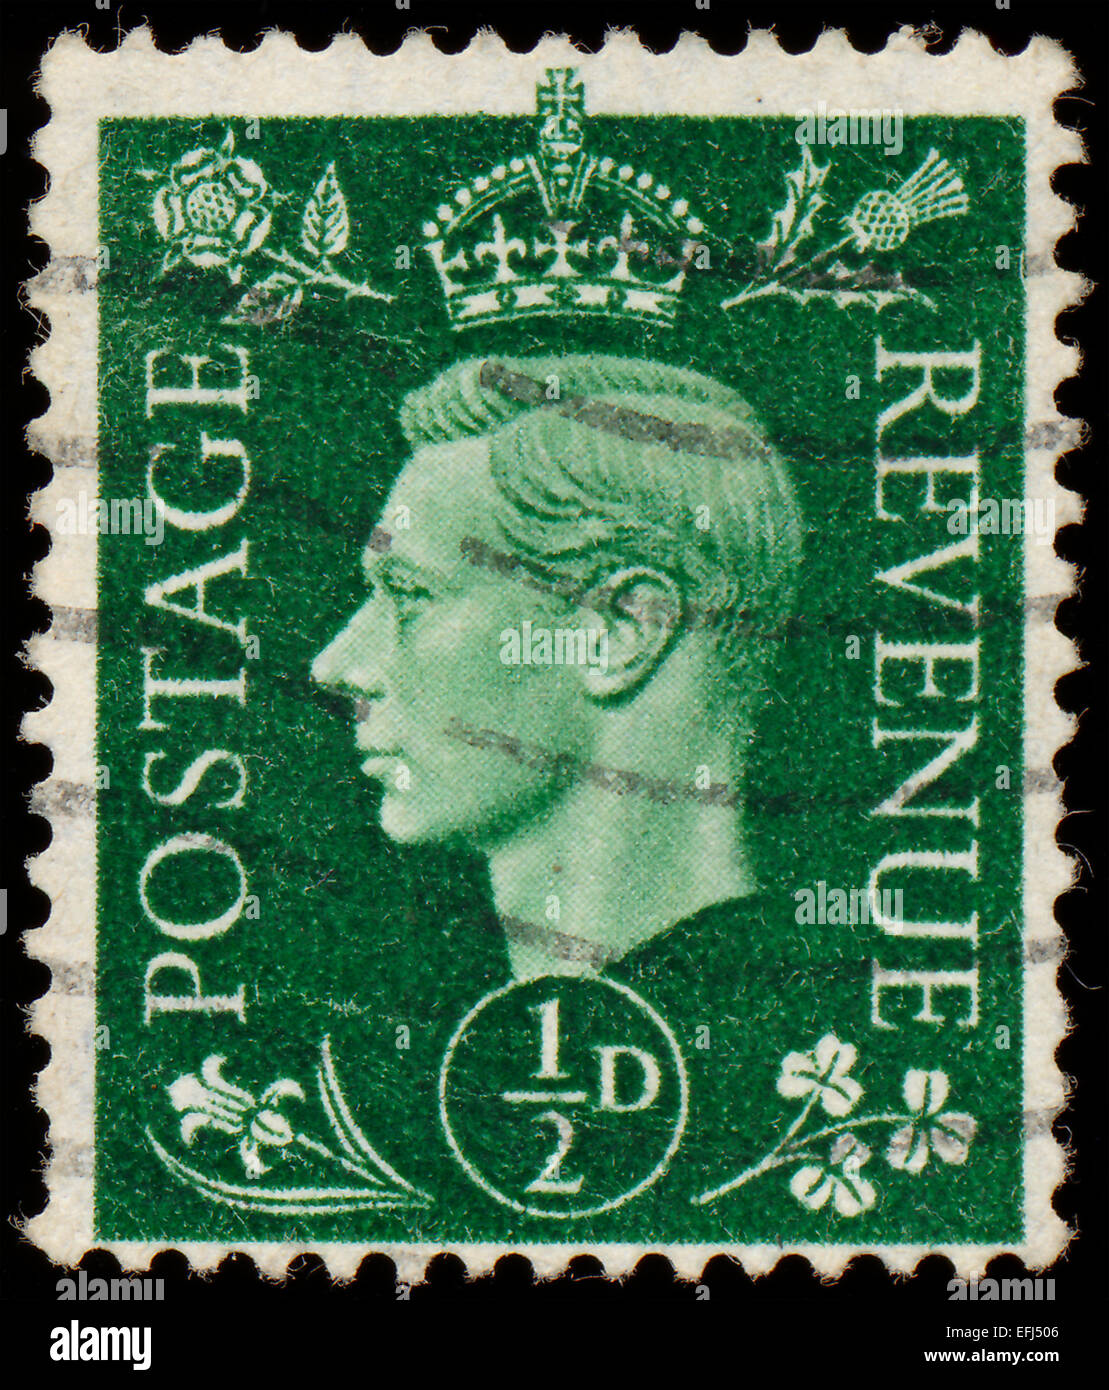 Regno Unito - circa 1950: un timbro stampato nel Regno Unito mostra immagine del George VI (Albert Frederick Arthur George) era il re del regno re Foto Stock